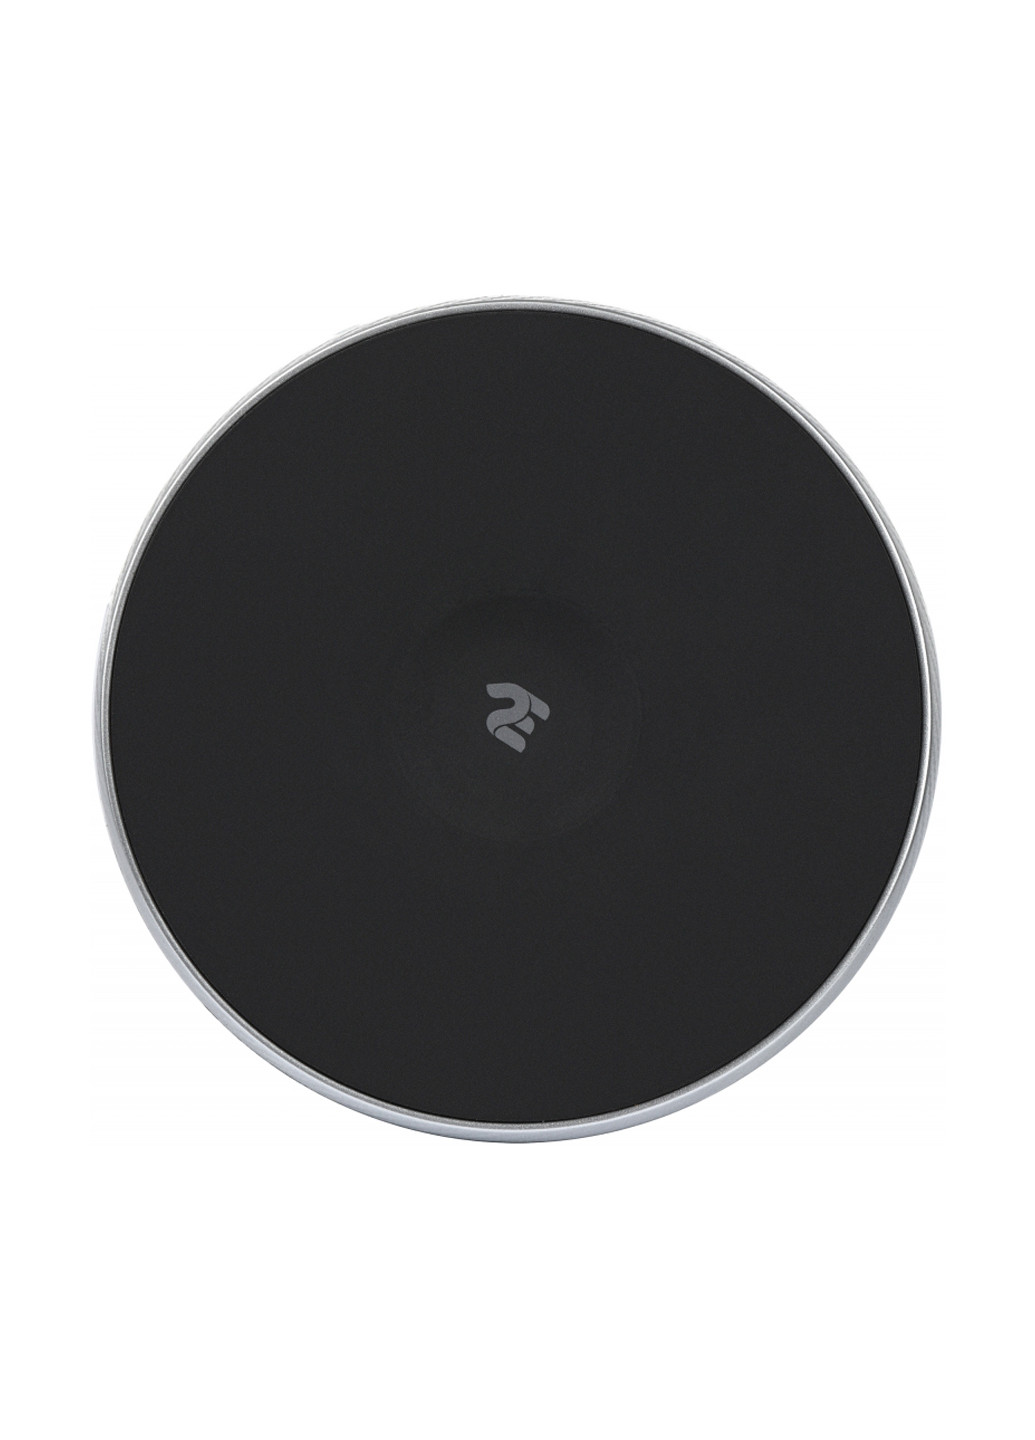 Беспроводное ЗУ Wireless Charging Pad, black (-WCQ01-02) 2E wireless charging pad, black (2e-wcq01-02) (137882418)